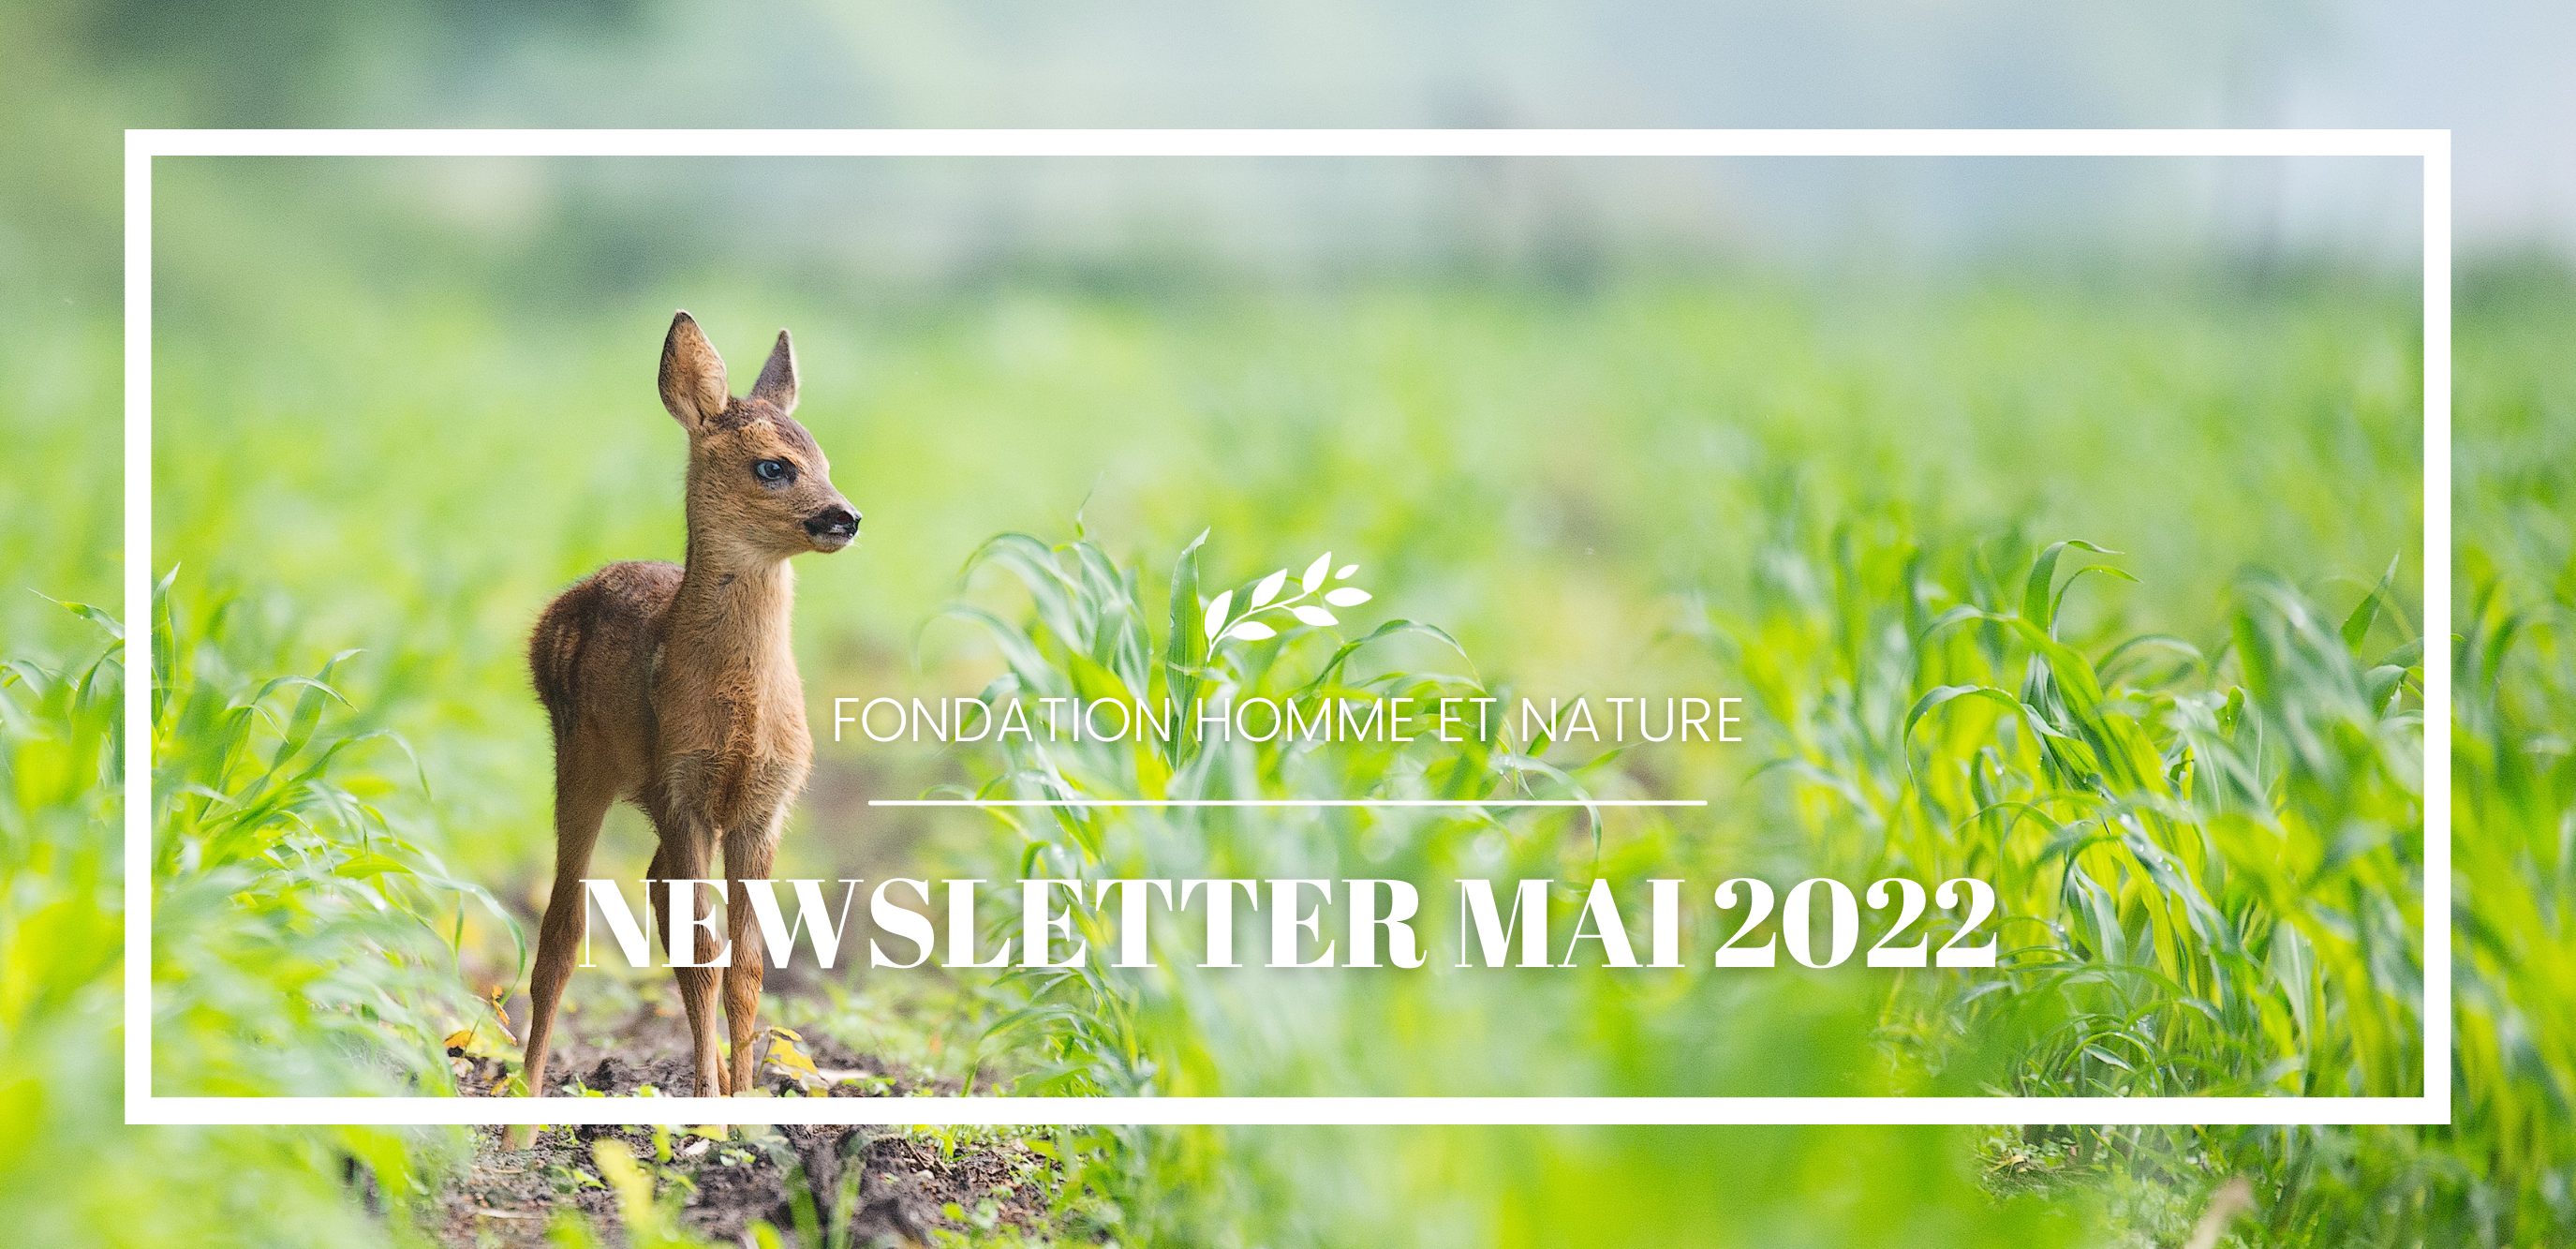 newsletter fondation homme et nature mai 2022